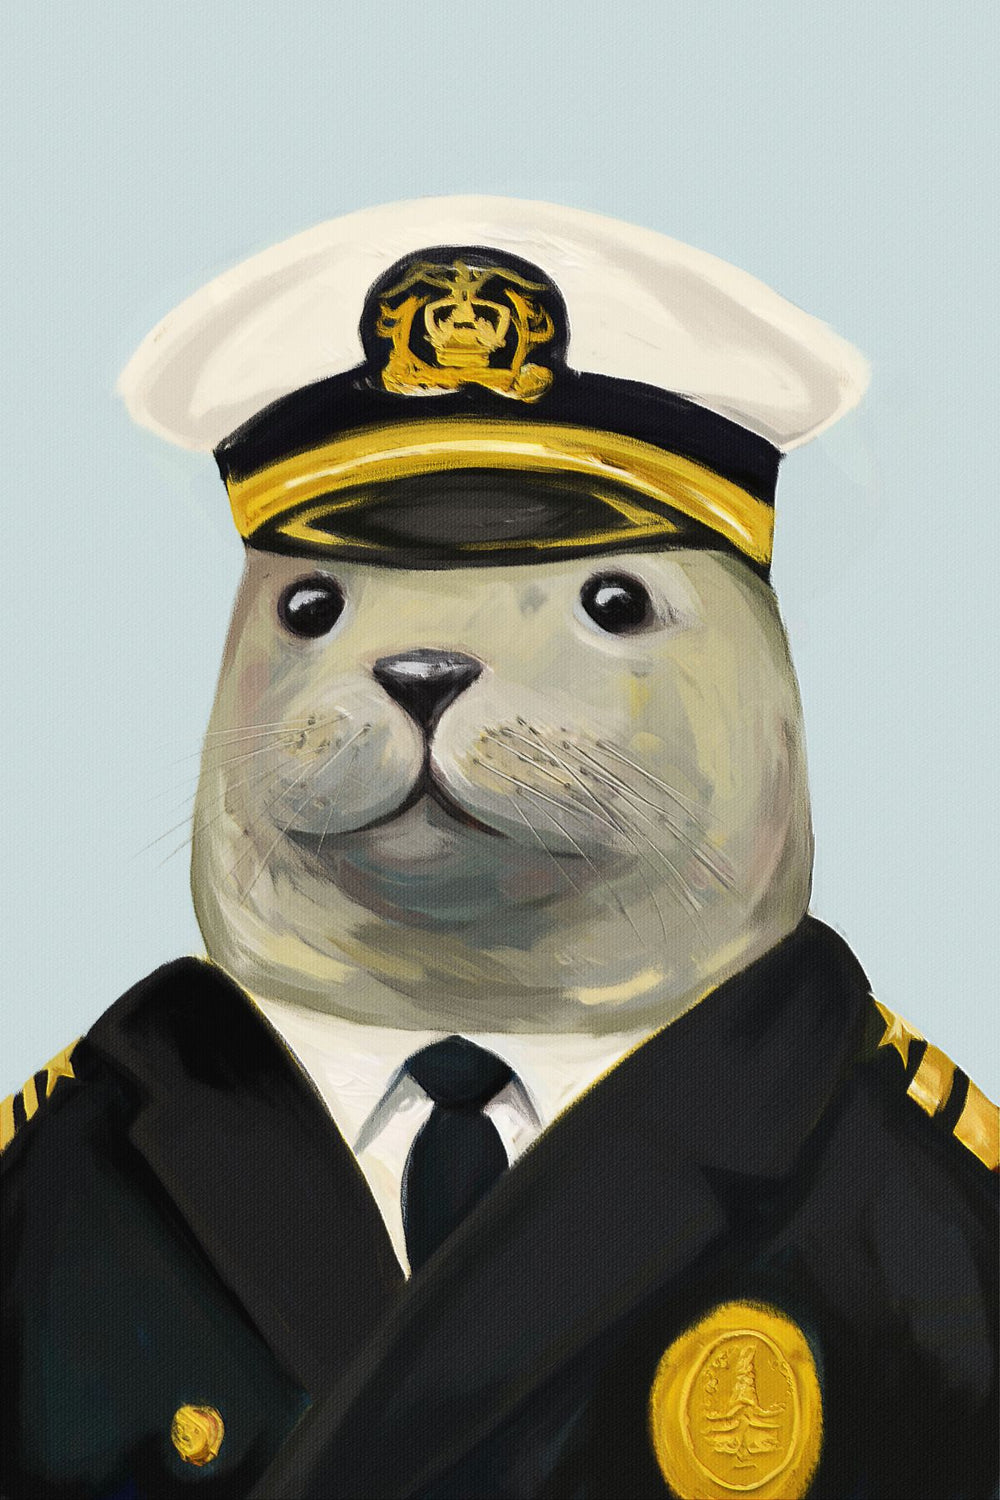 Captain Seal